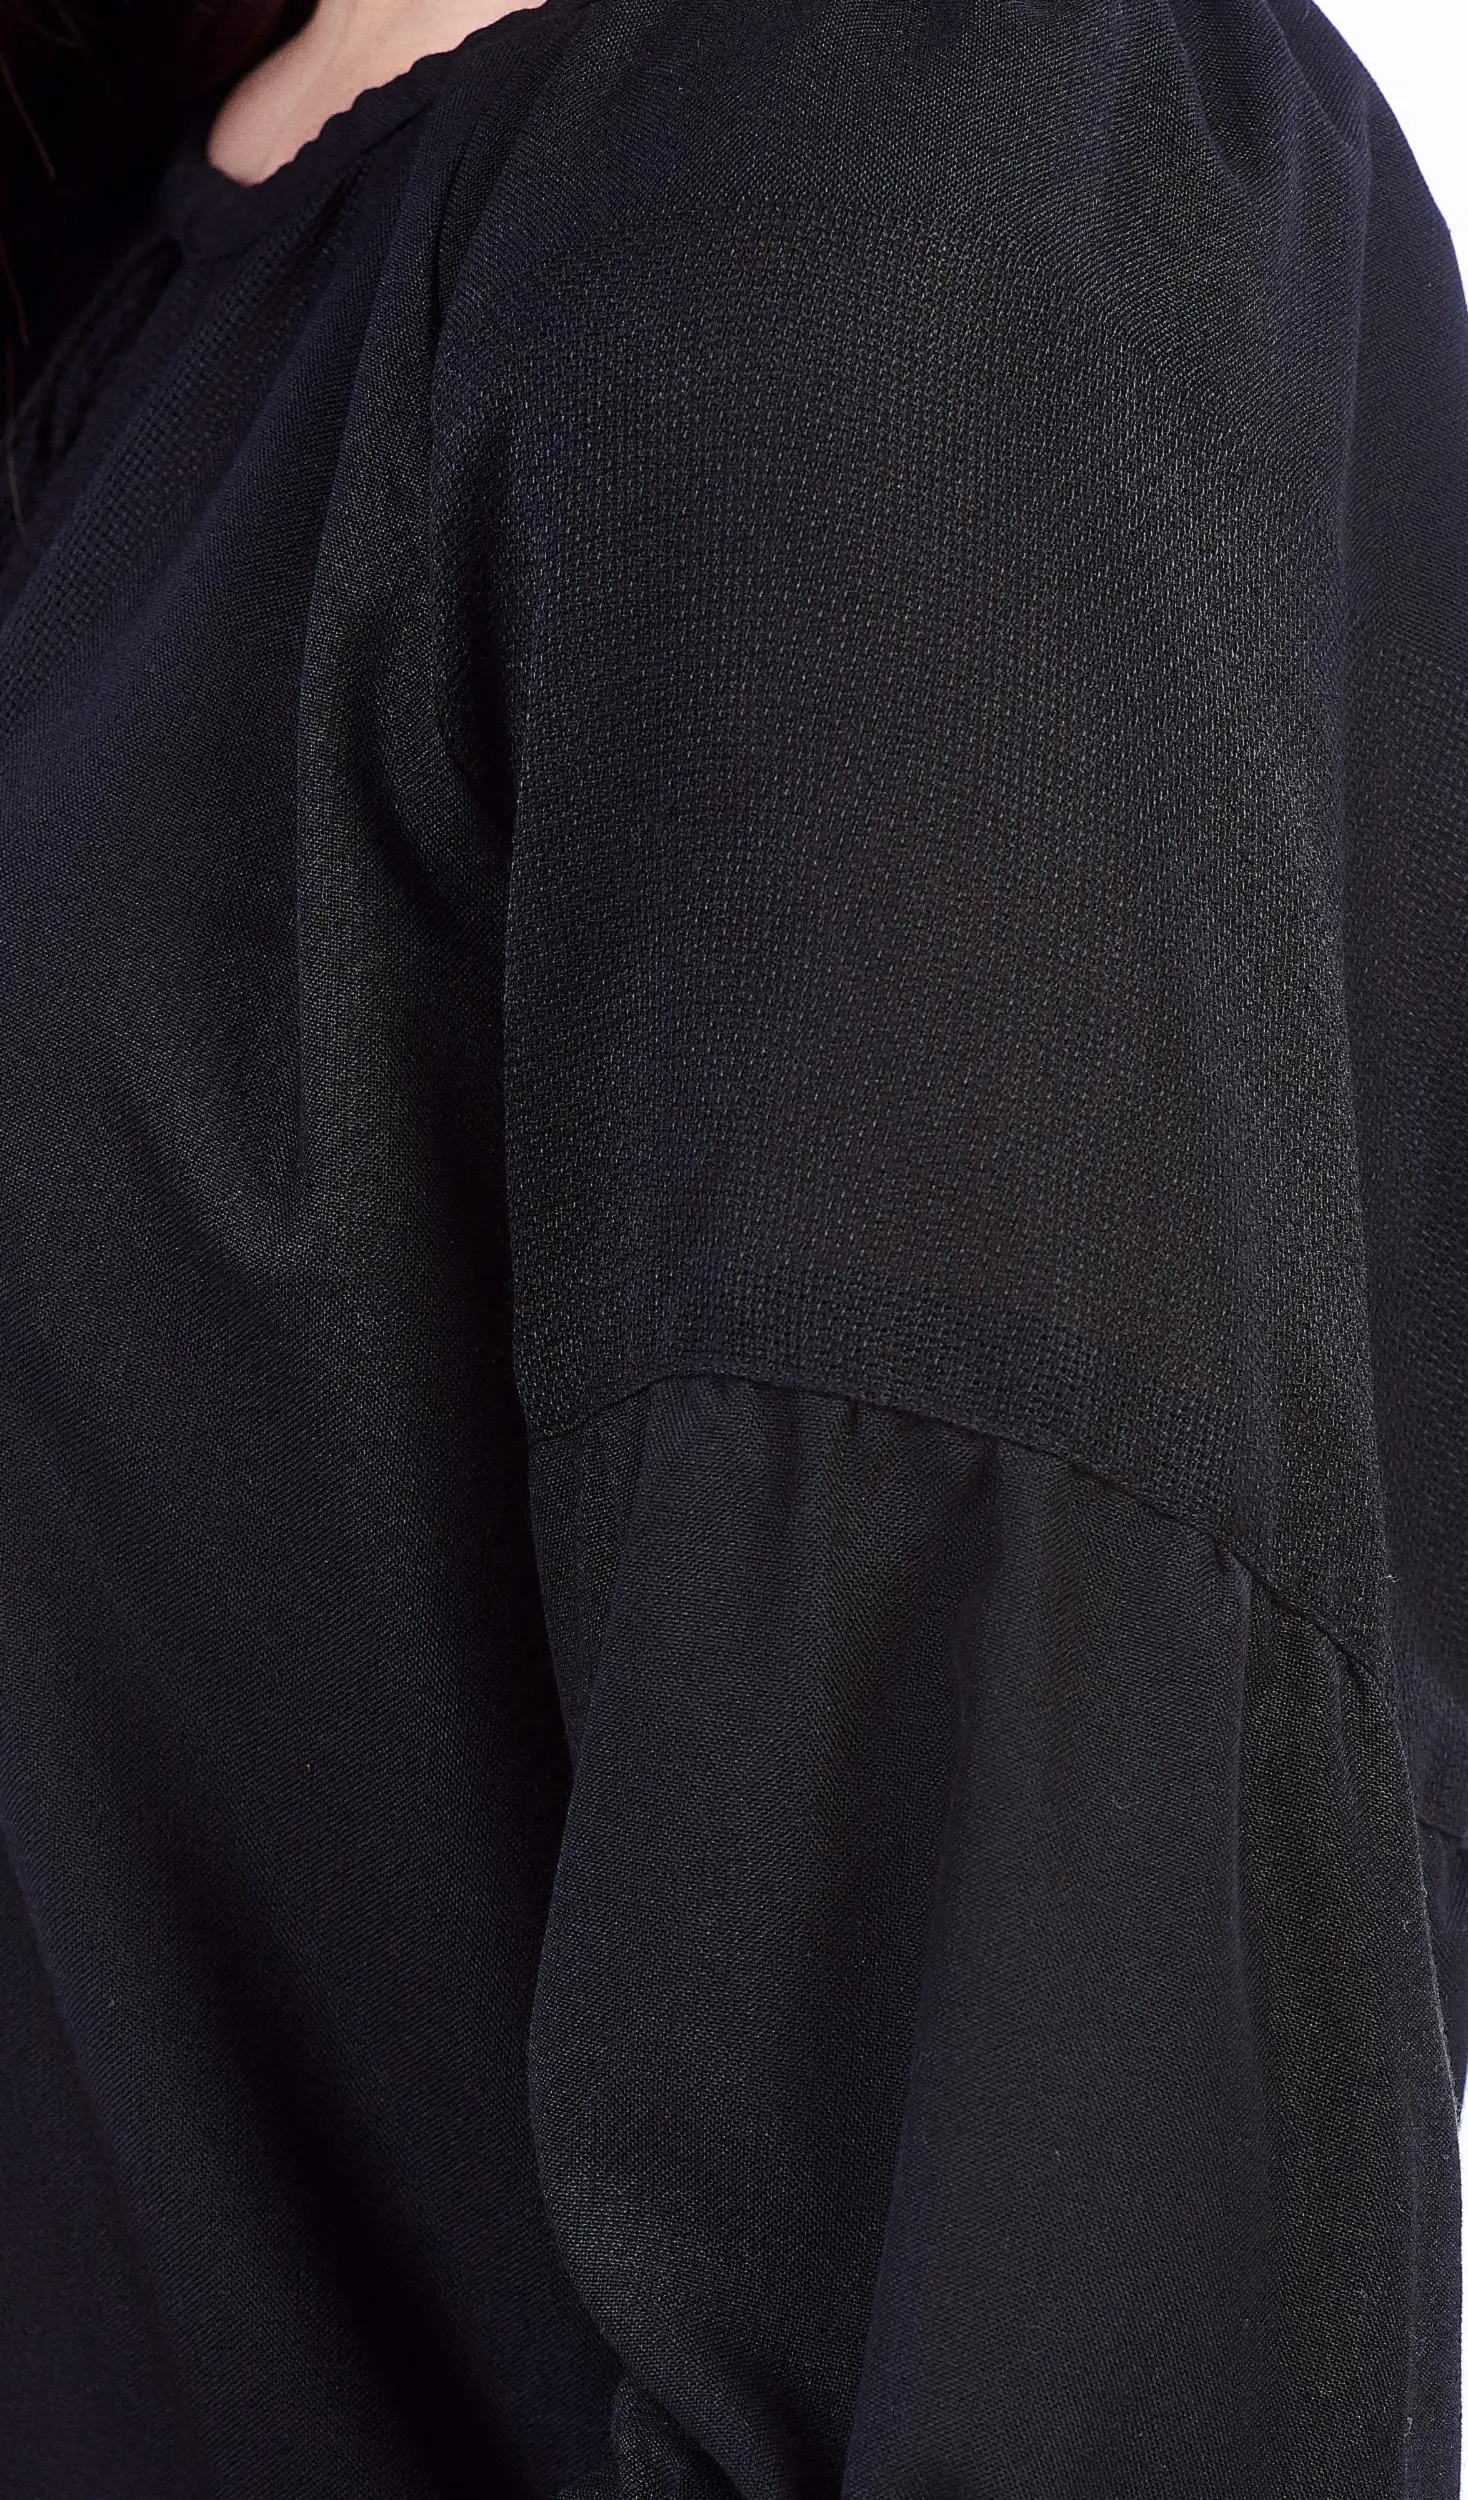 ТПК-172 03-02/09 Сорочка жіноча під вишивку, чорна, 3/4 рукав, розмір 56